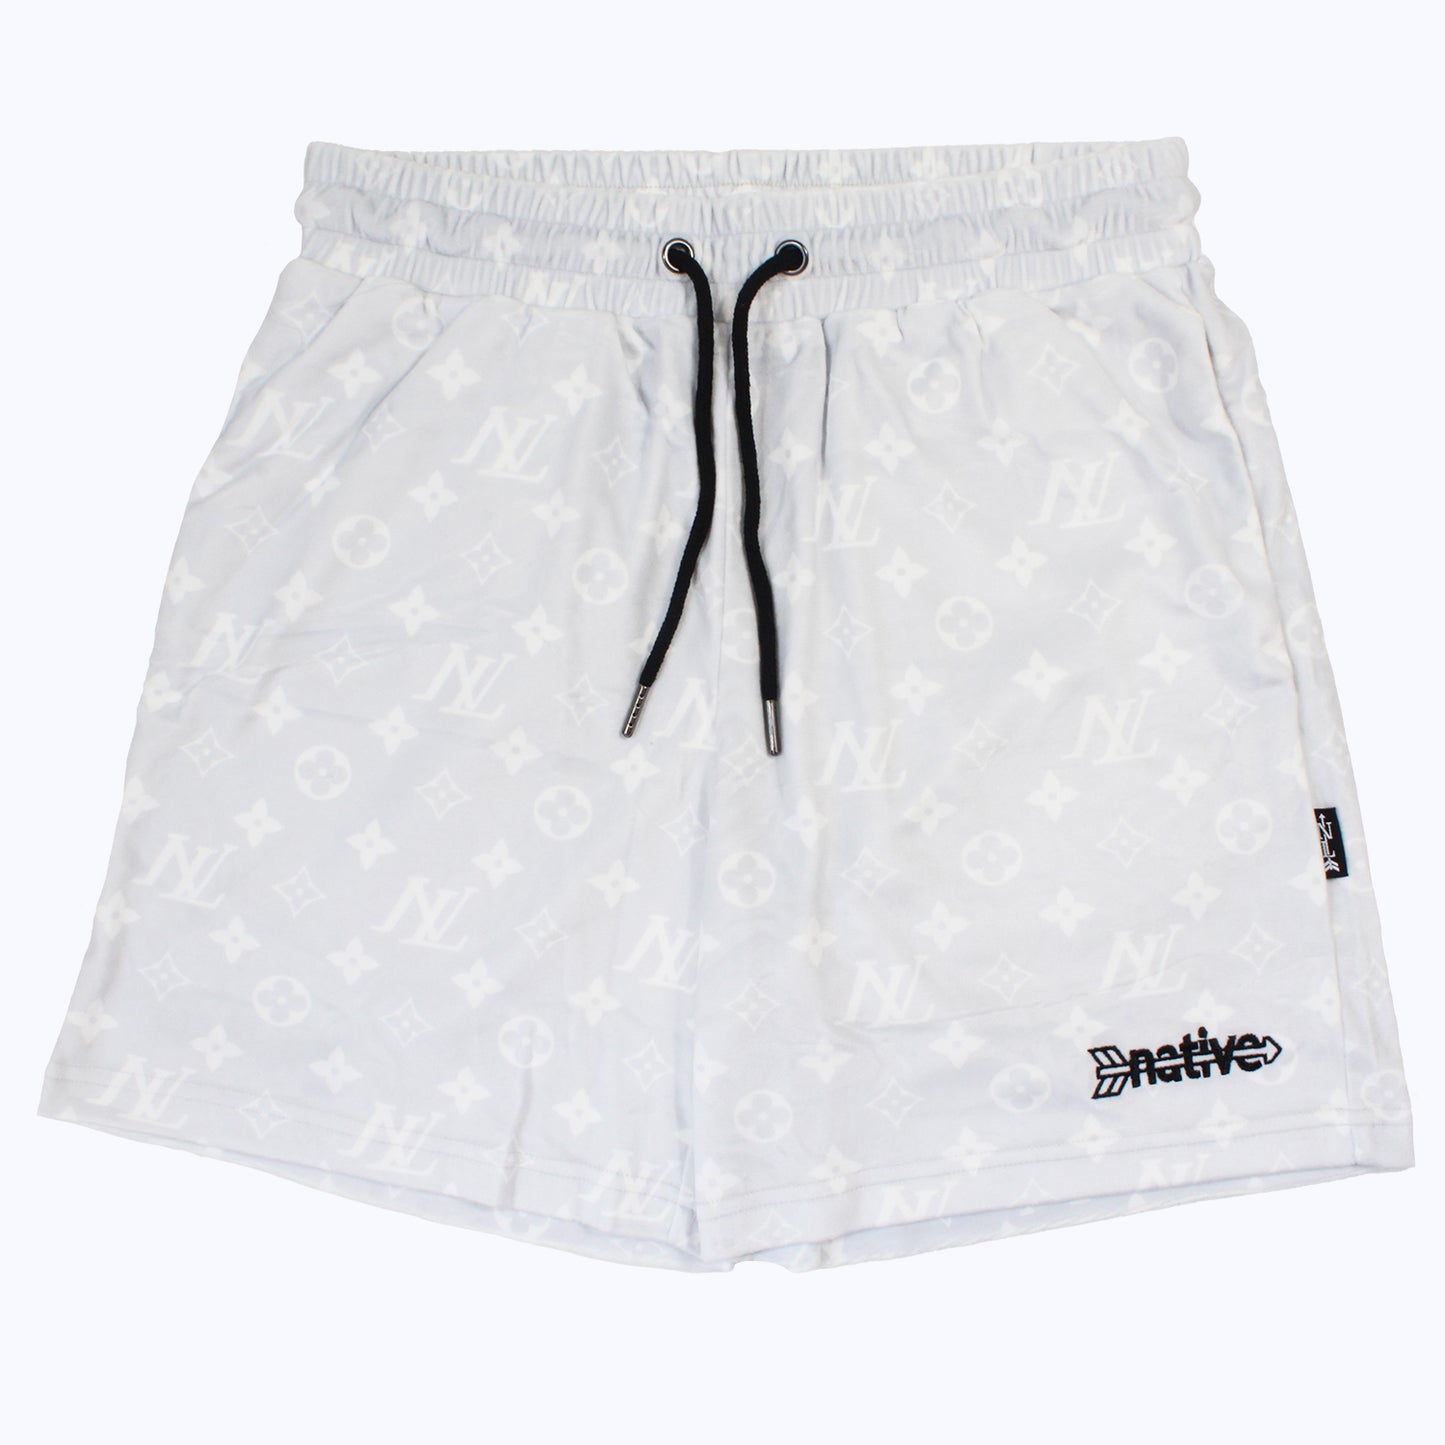 nl velour shorts in platinum